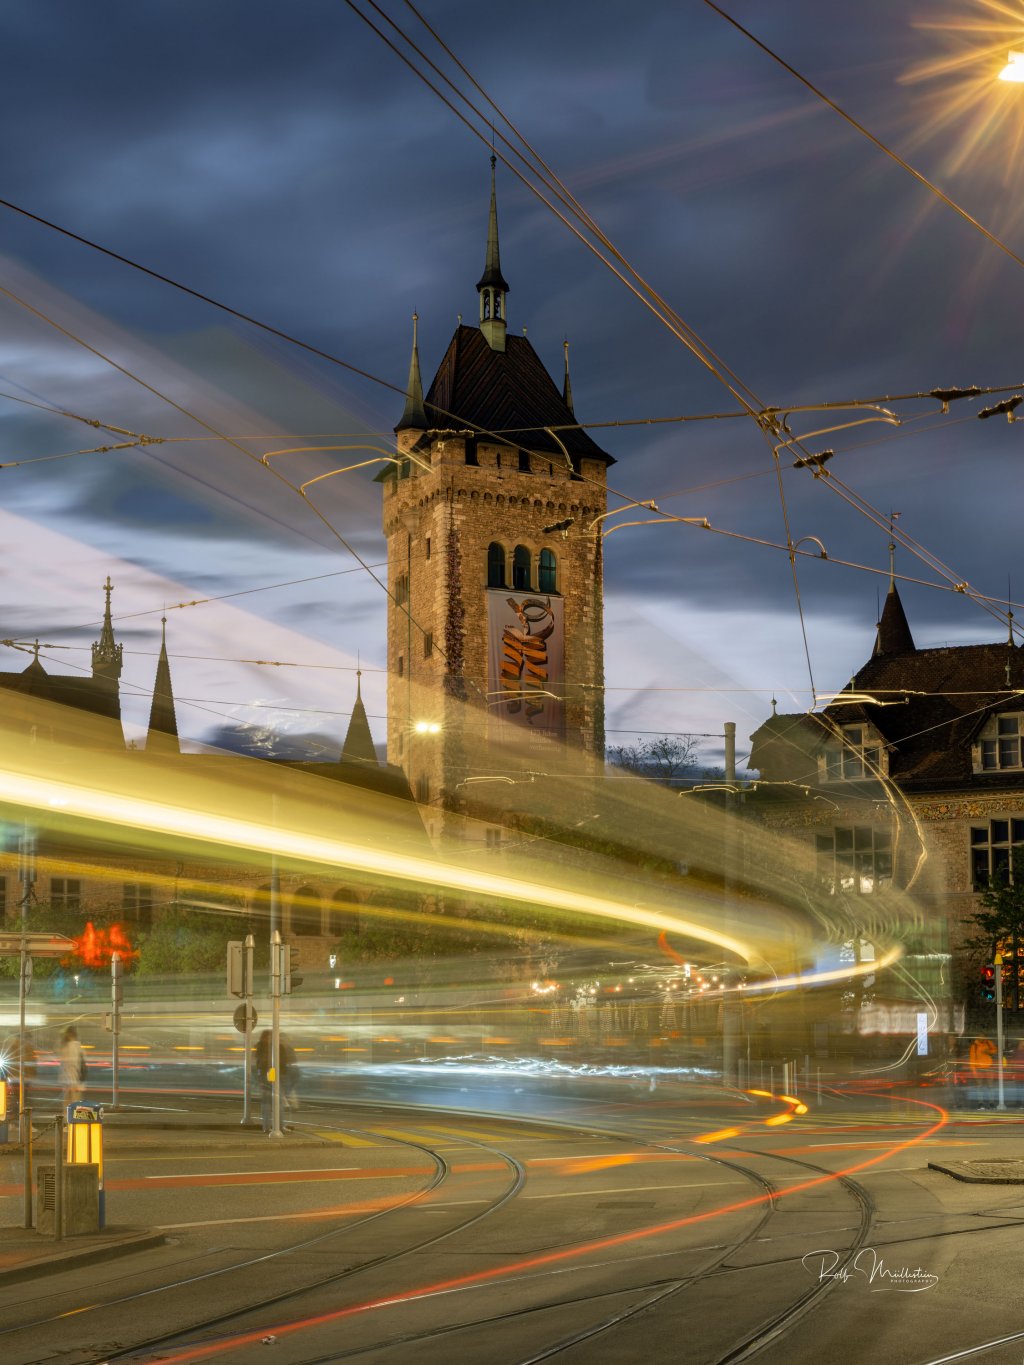 image-12232841-landesmuseum-zuerich-nacht-tram-zuerichfoto.ch-hdr-foto-farbig-web-9bf31.w640.jpg